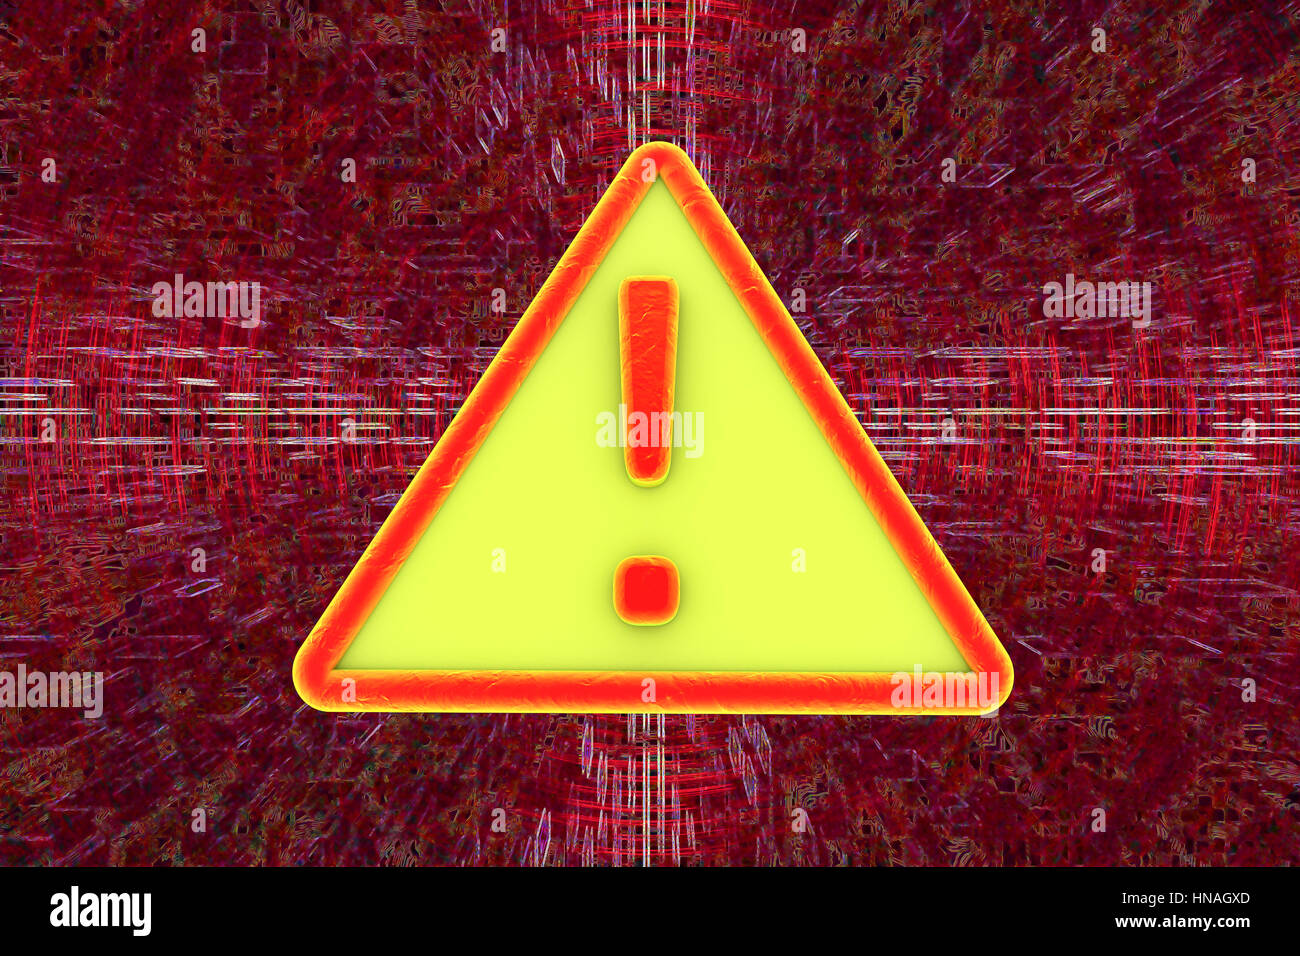 Computer virus alert sign, illustration Stock Photo